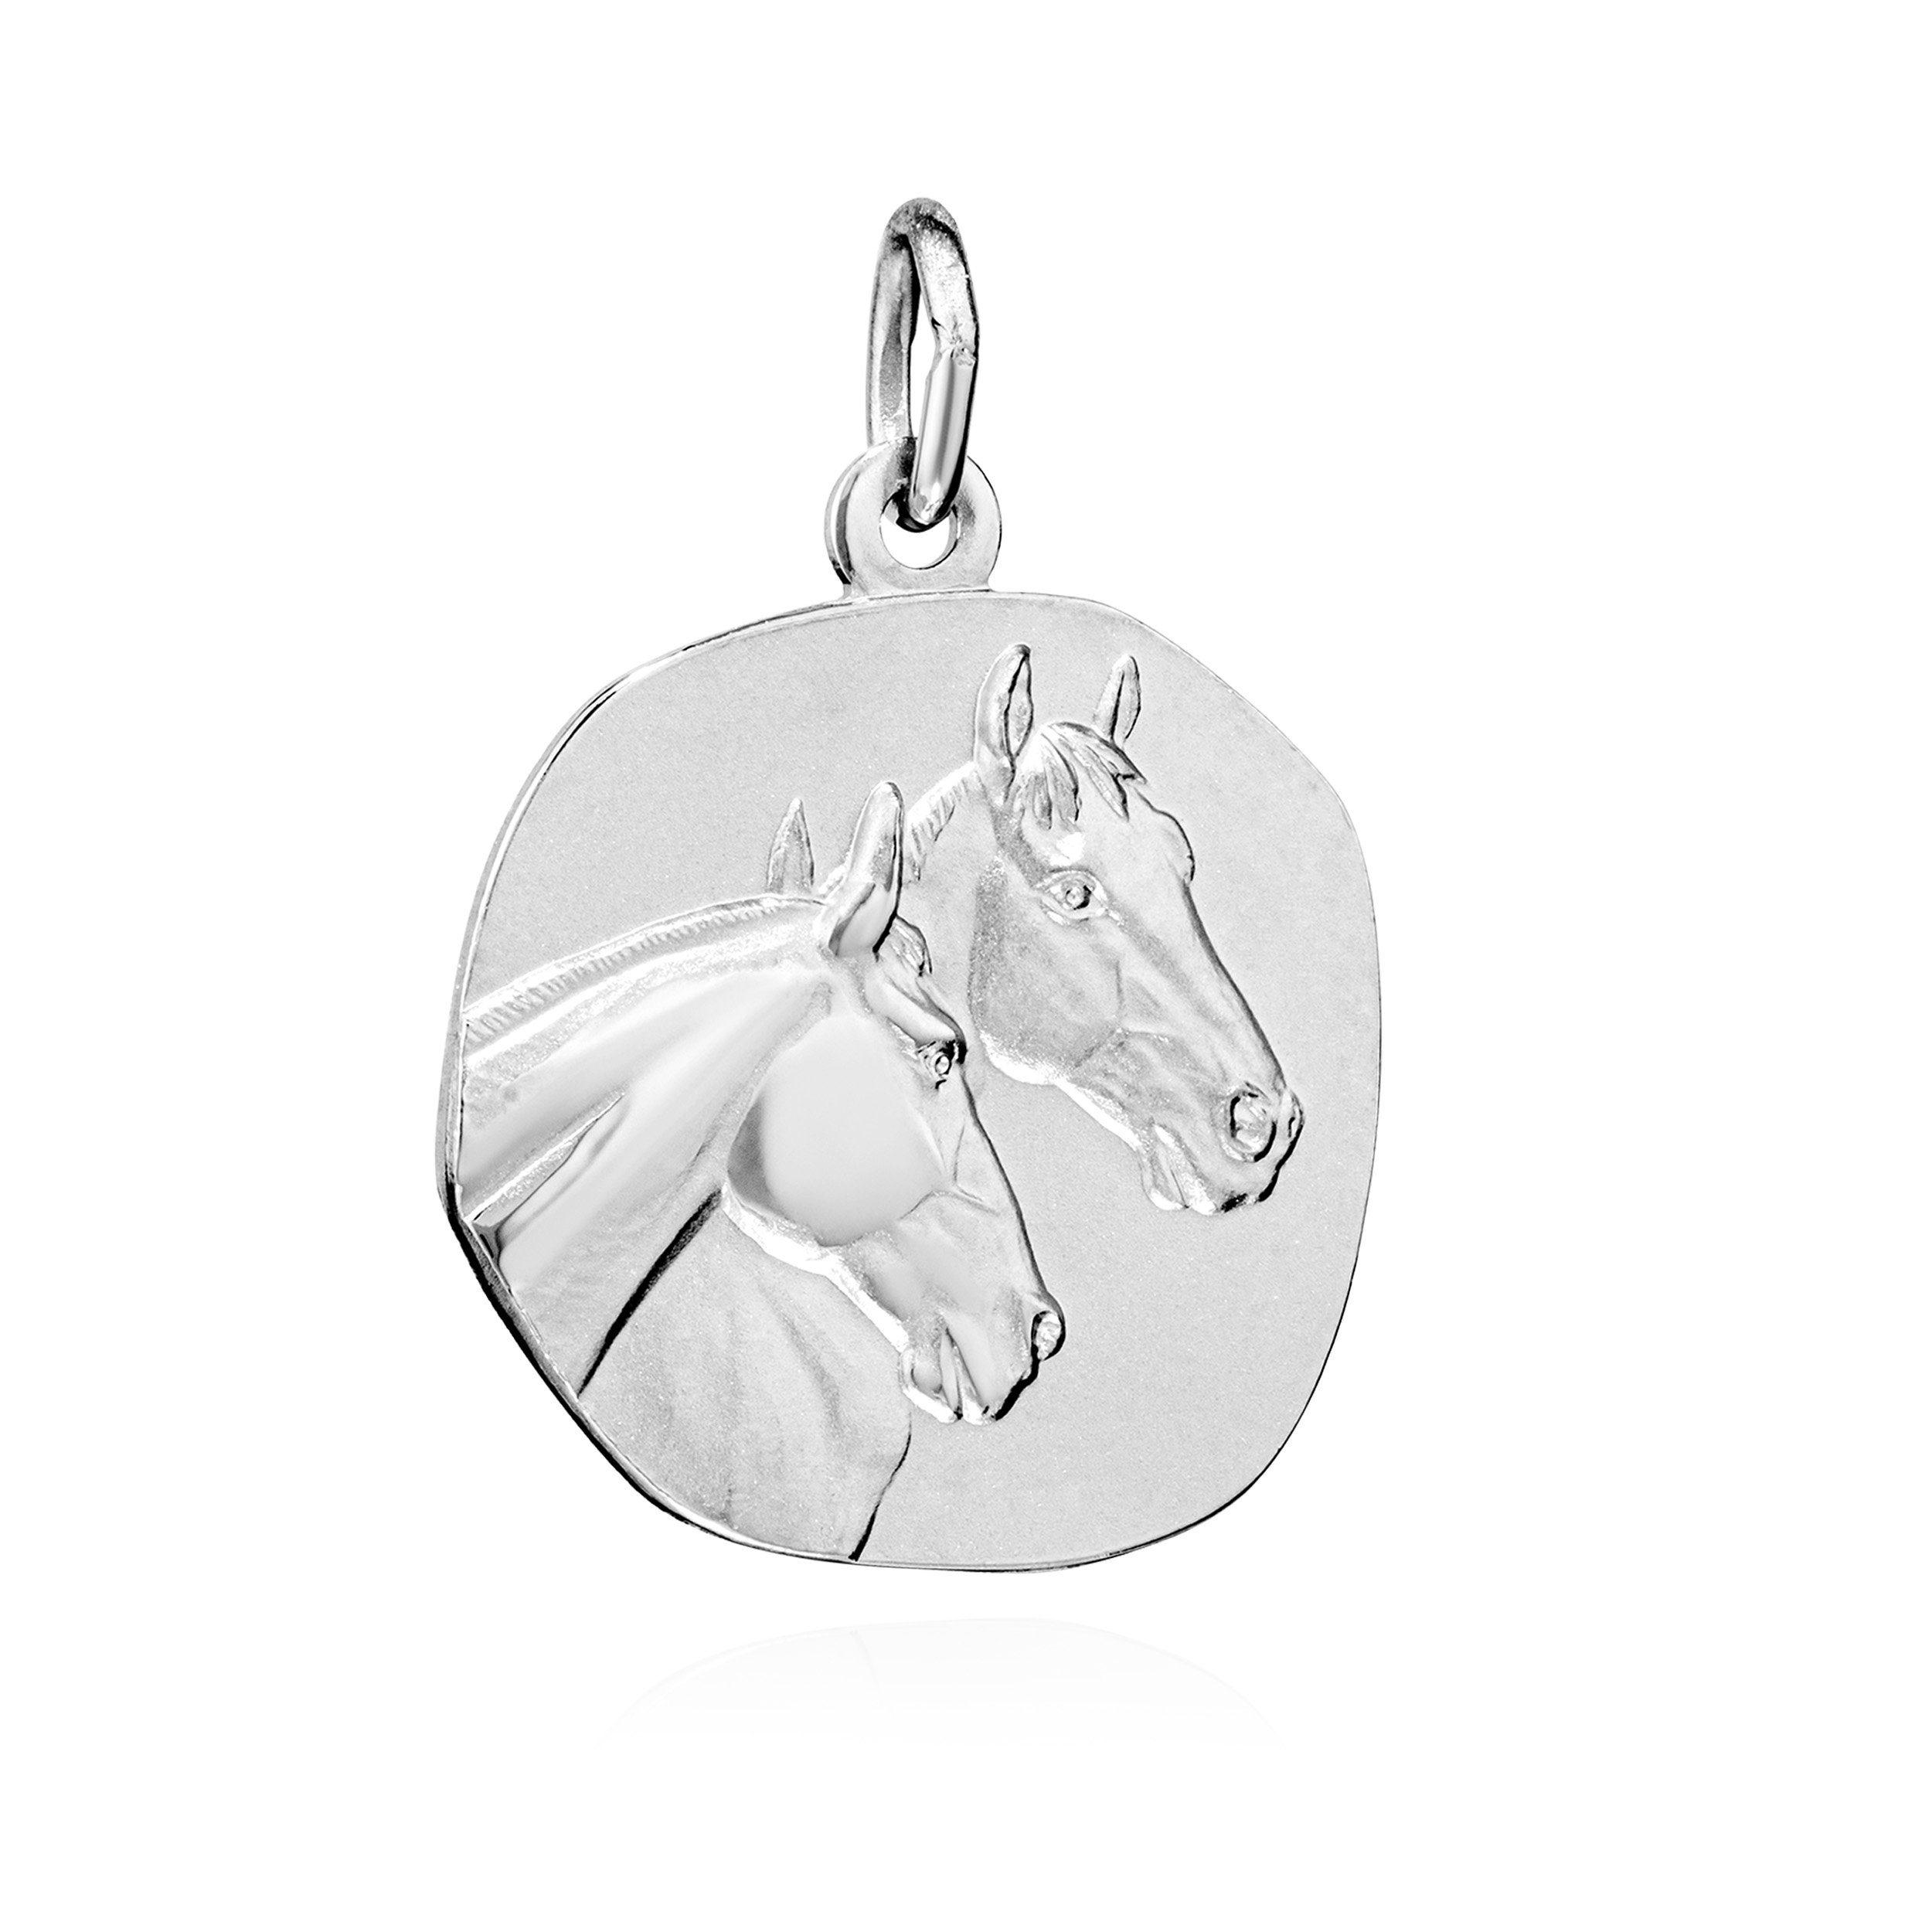 NKlaus Kettenanhänger 16mm Kettenanhänger Pferdeköpfe 925 Silber anlaufgeschützt glanz-matt | Kettenanhänger